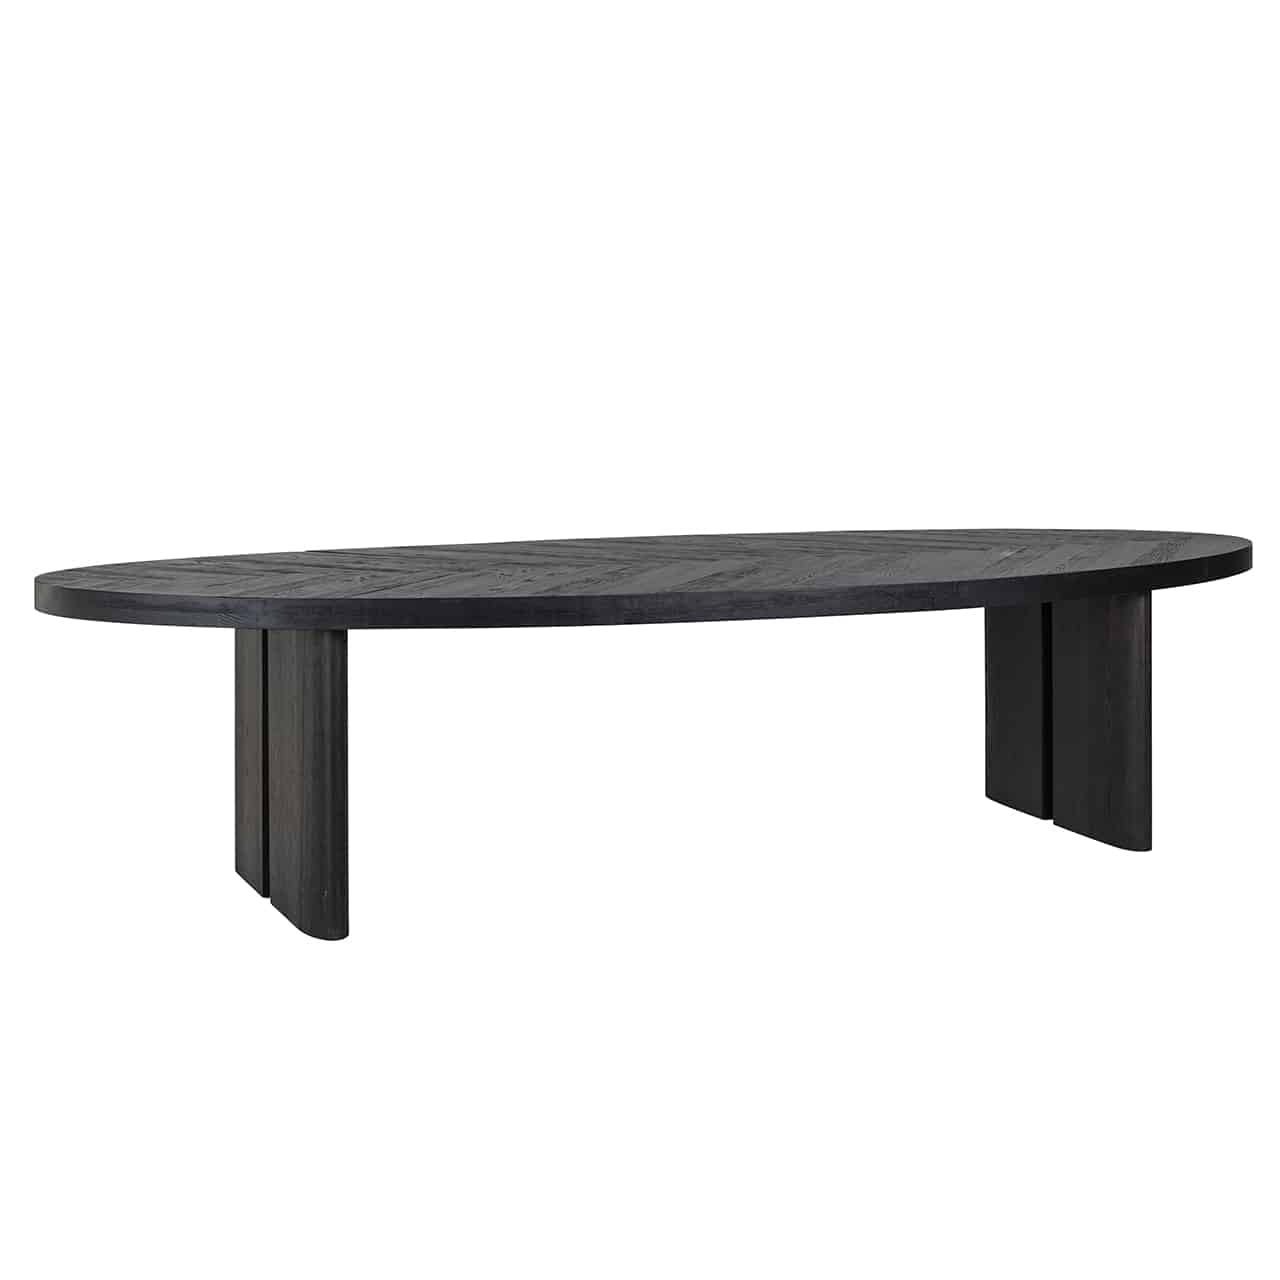 Massiver Esstisch in schwarz-braun mit einer großen, ovalen Tischplatte, links und rechts je zwei breite an der Außenseite abgerundete Holzplanken als Beine.